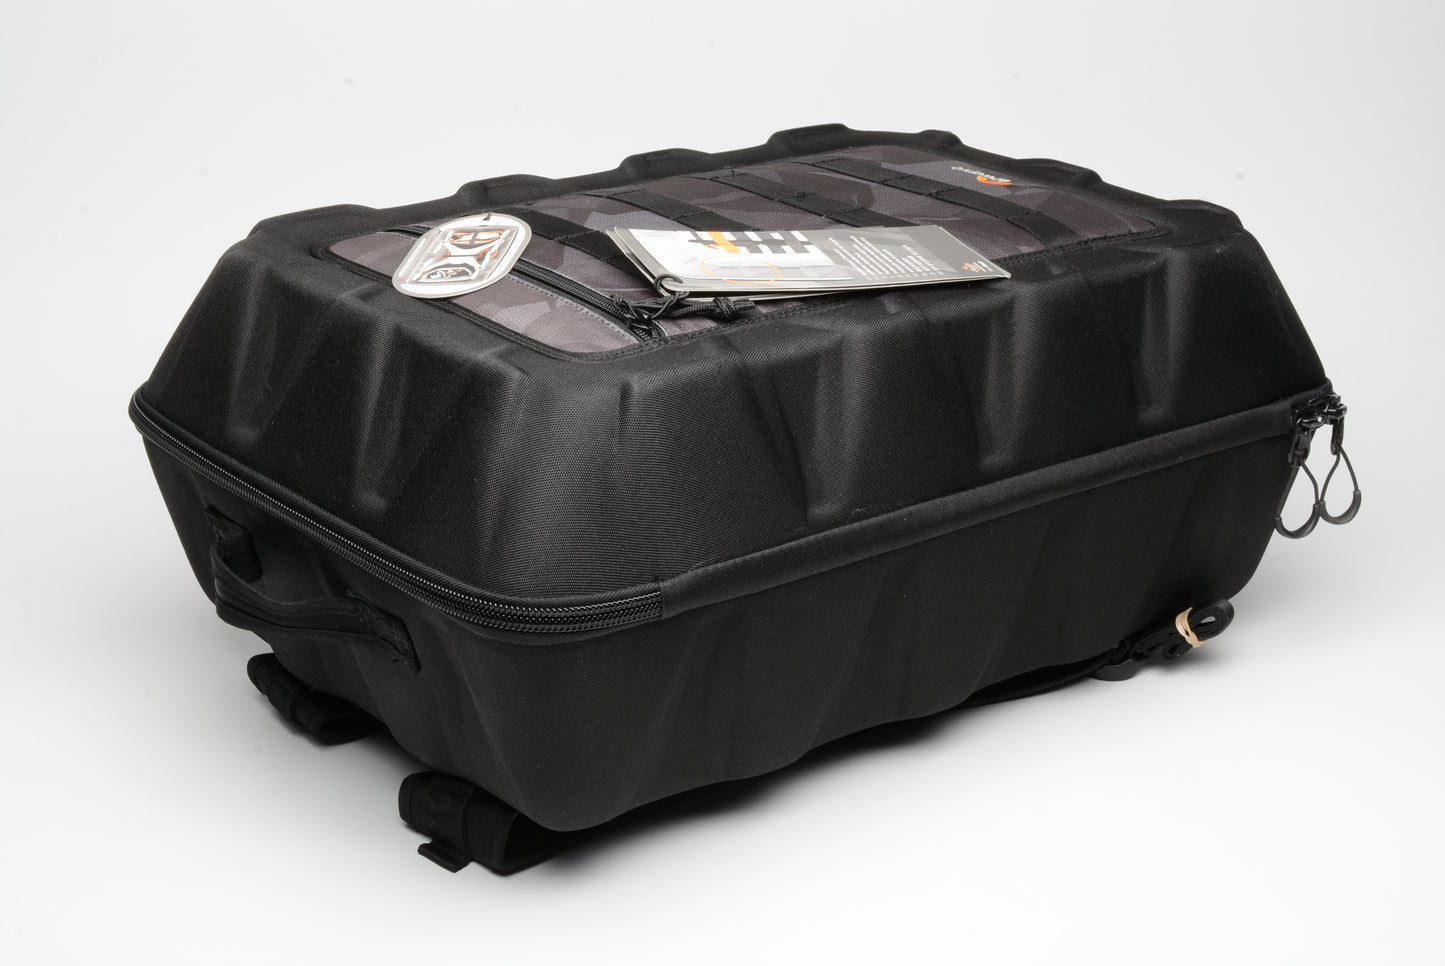 Lowepro DroneGurad CS400 (Black) case, Never used (light shelf wear)